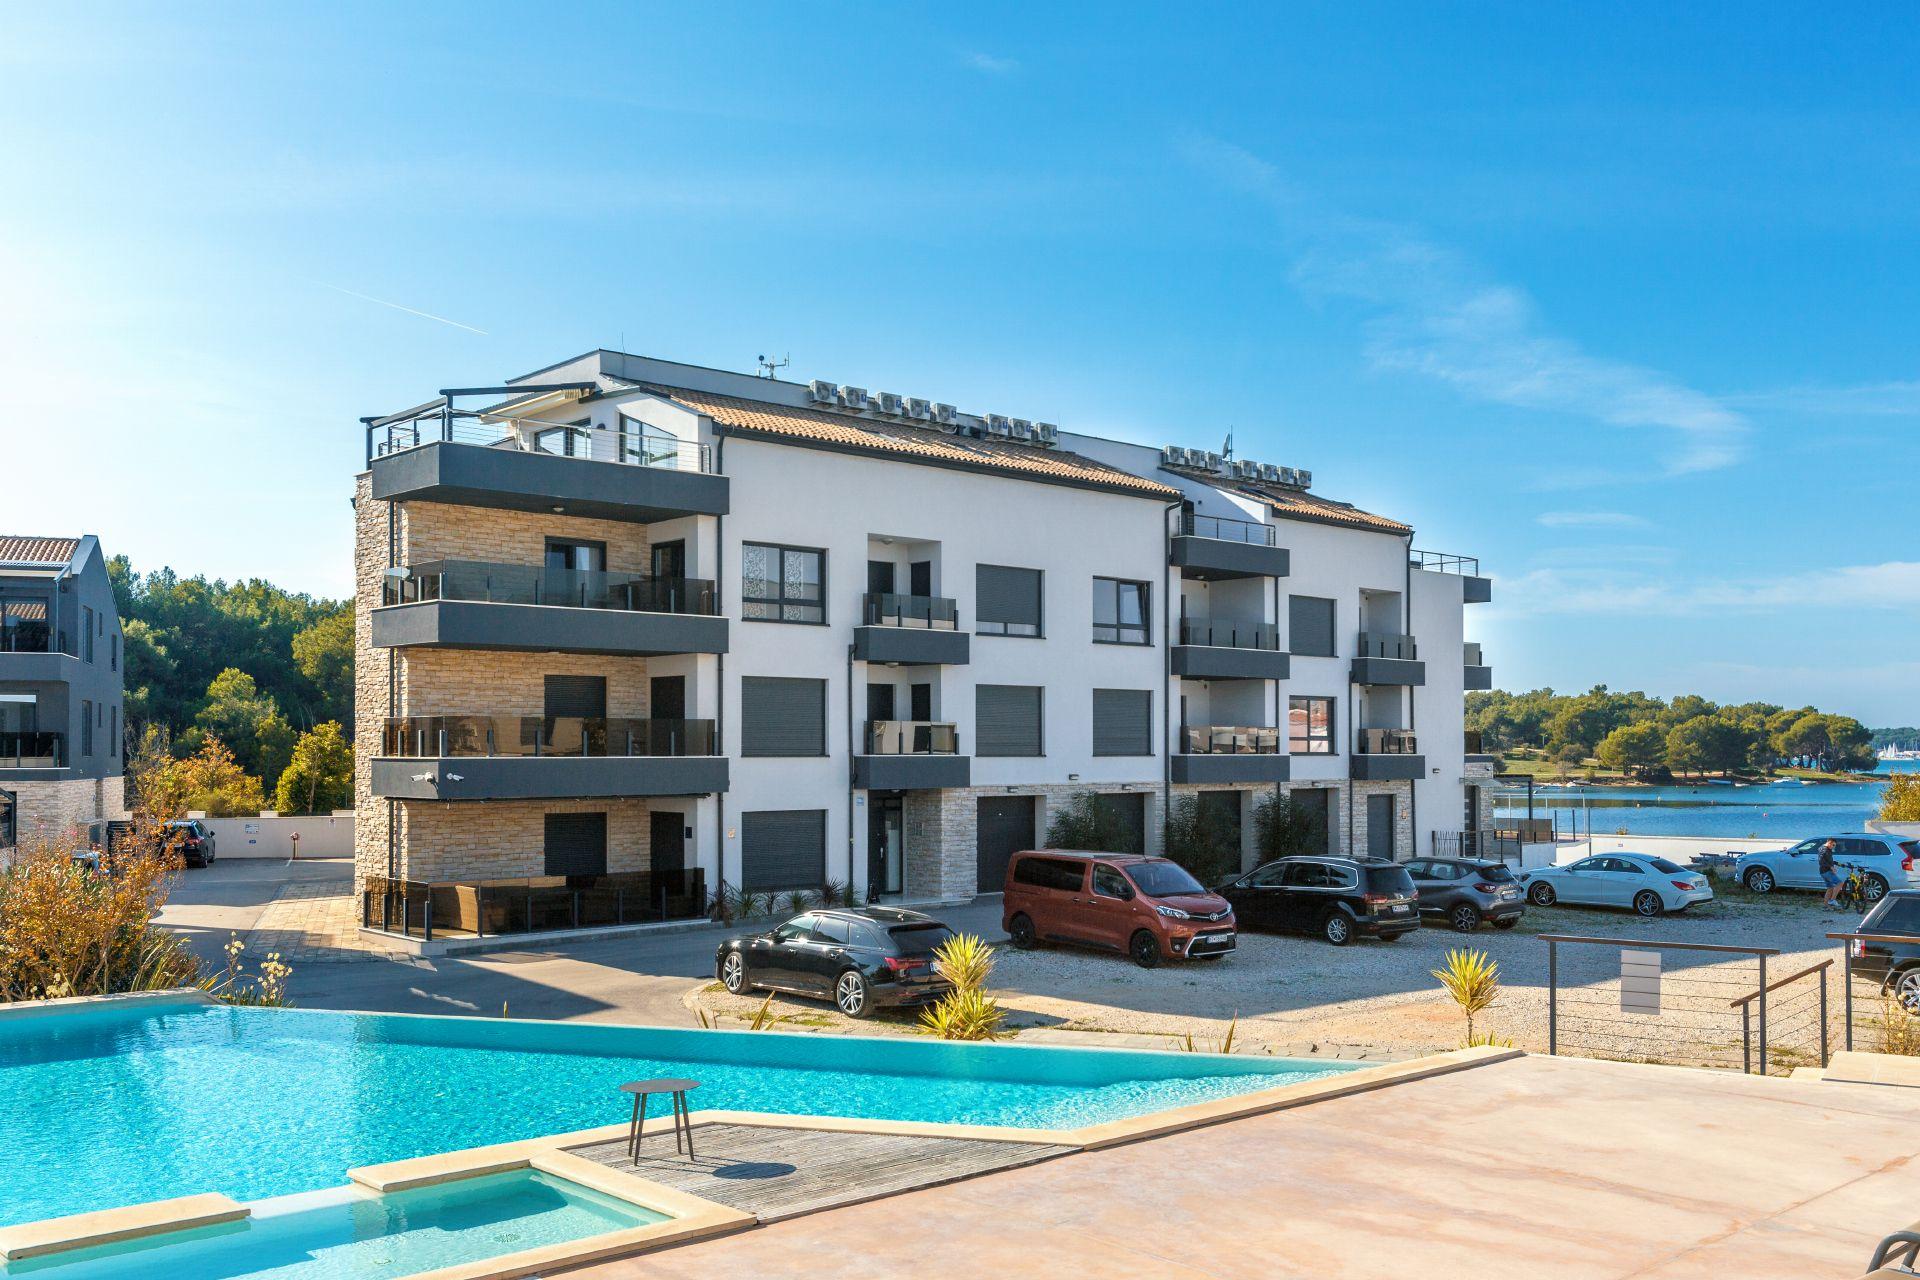 Ferienwohnung für 4 Personen ca. 59 m² i  in Istrien